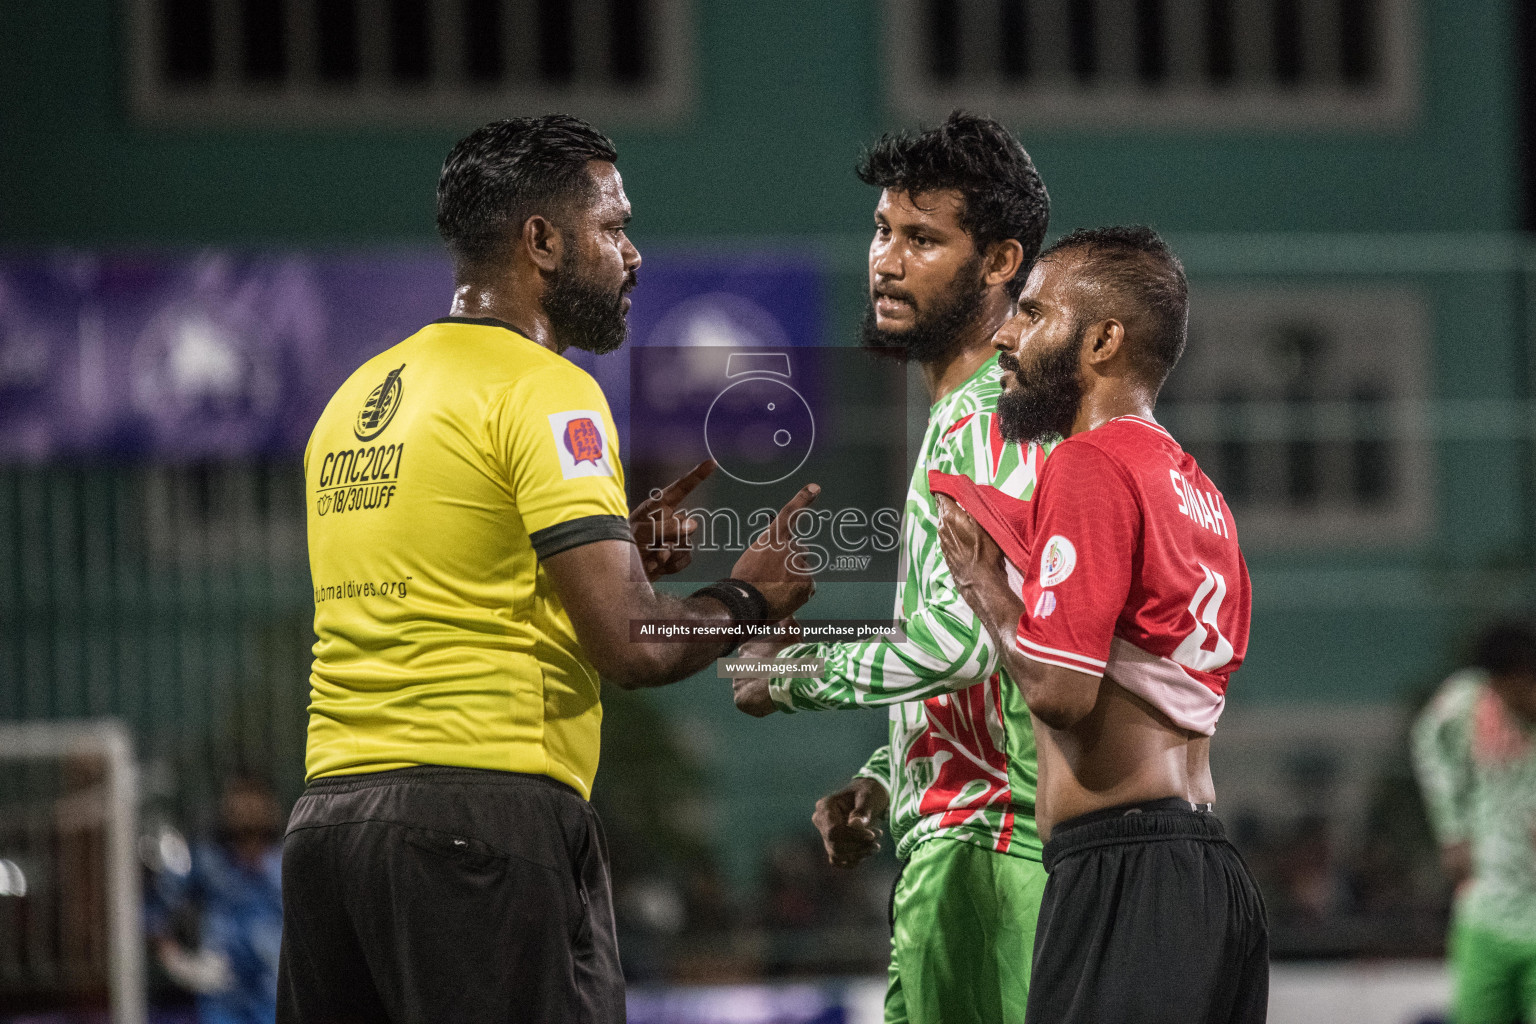 Club Maldives Day 8 - 29th November 2021, at Hulhumale. Photo: Nausham Waheed / Images.mv